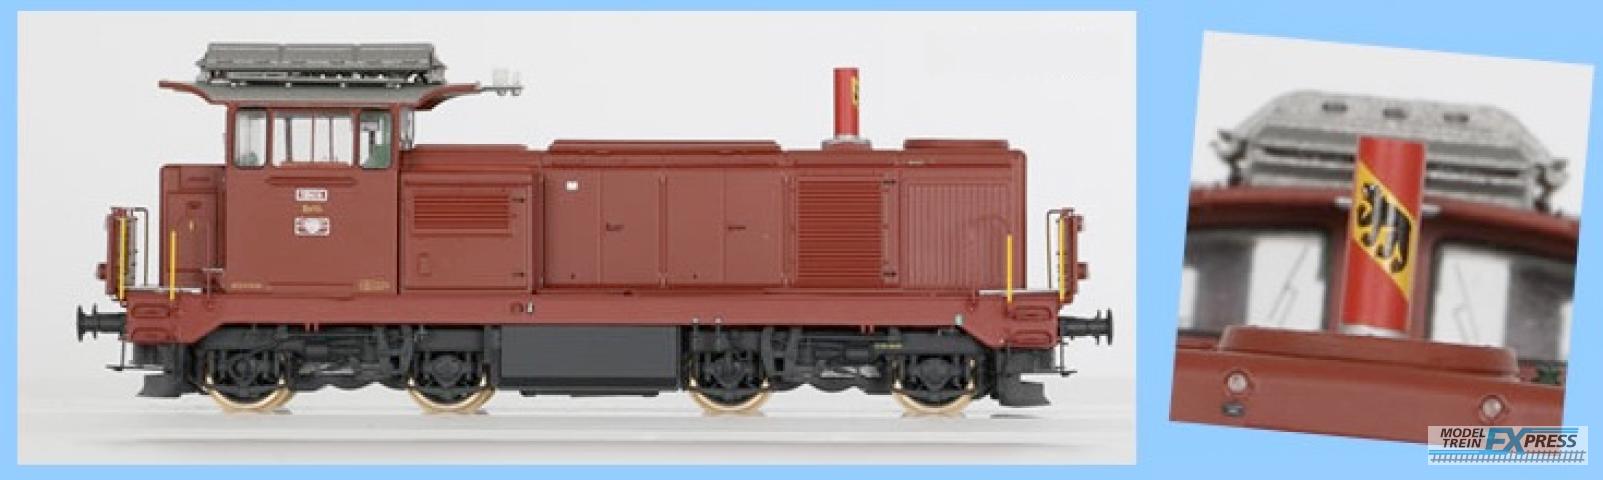 LS Models 17064S 18414, bruin, met rode schoorsteen, blazoen stadt Bern  /  Ep. IVB  /  SBB  /  HO  /  DC SOUND  /  1 P.